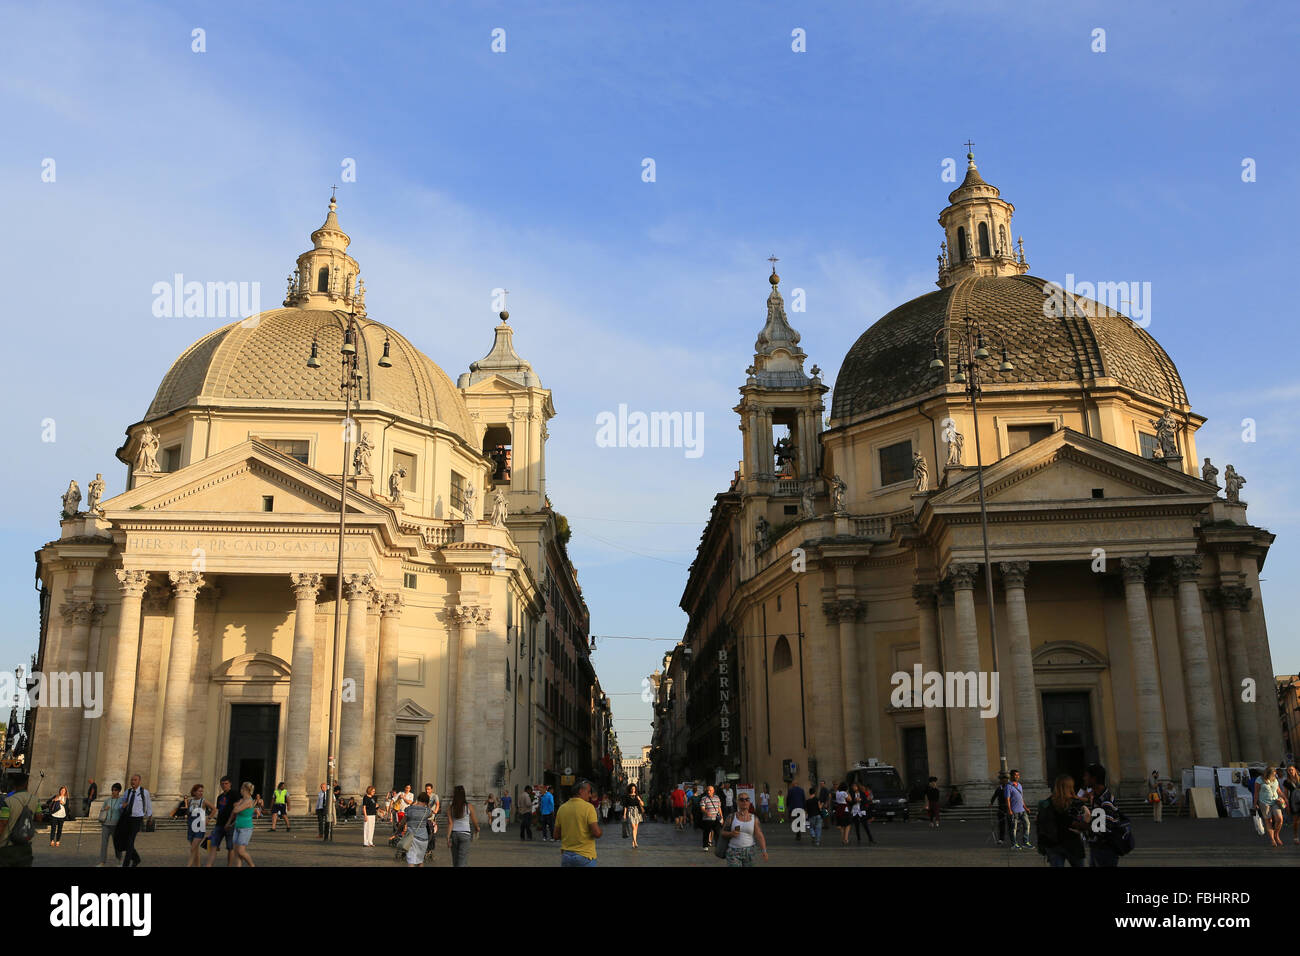 Santa Maria Churches, Piazza del Popolo, Rome, Italy. Stock Photo